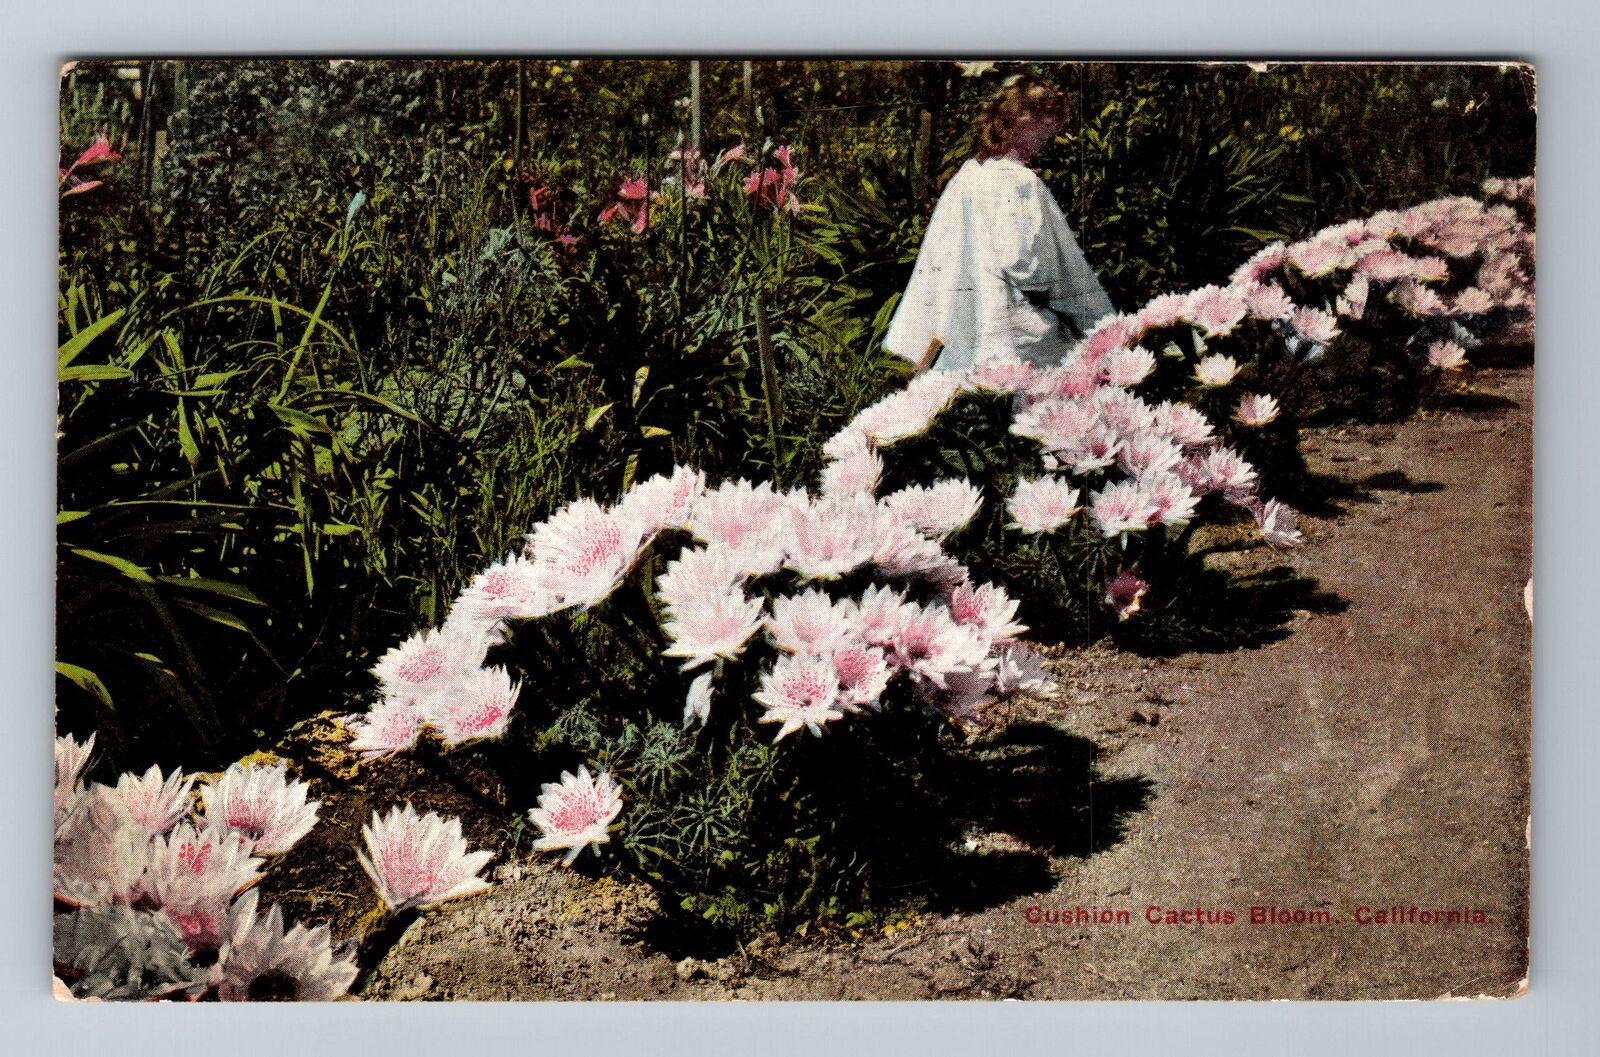 CA-California, Child Among Blooming Cushing Cactus, c1915, Vintage Postcard